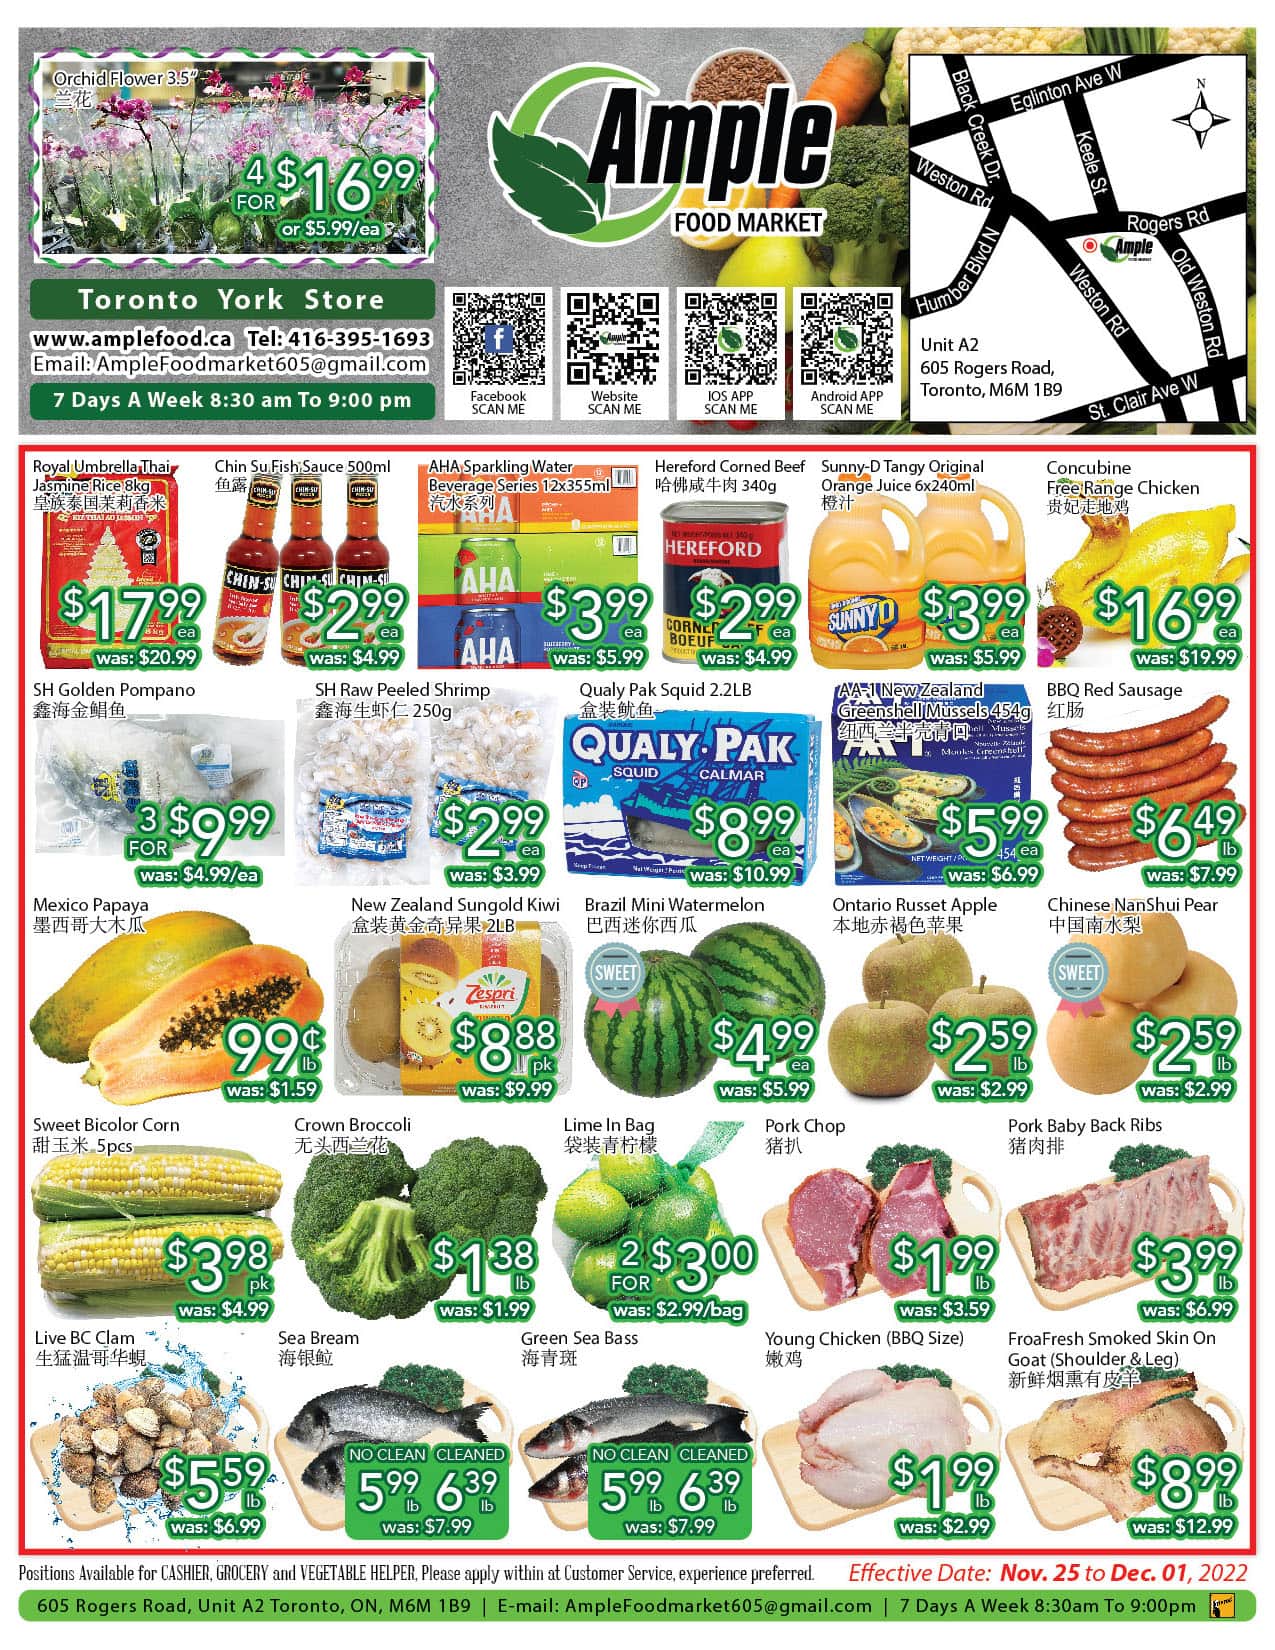 Image de la Promotion Ample Food Market - Toronto York Store - Weekly Flyer Specials